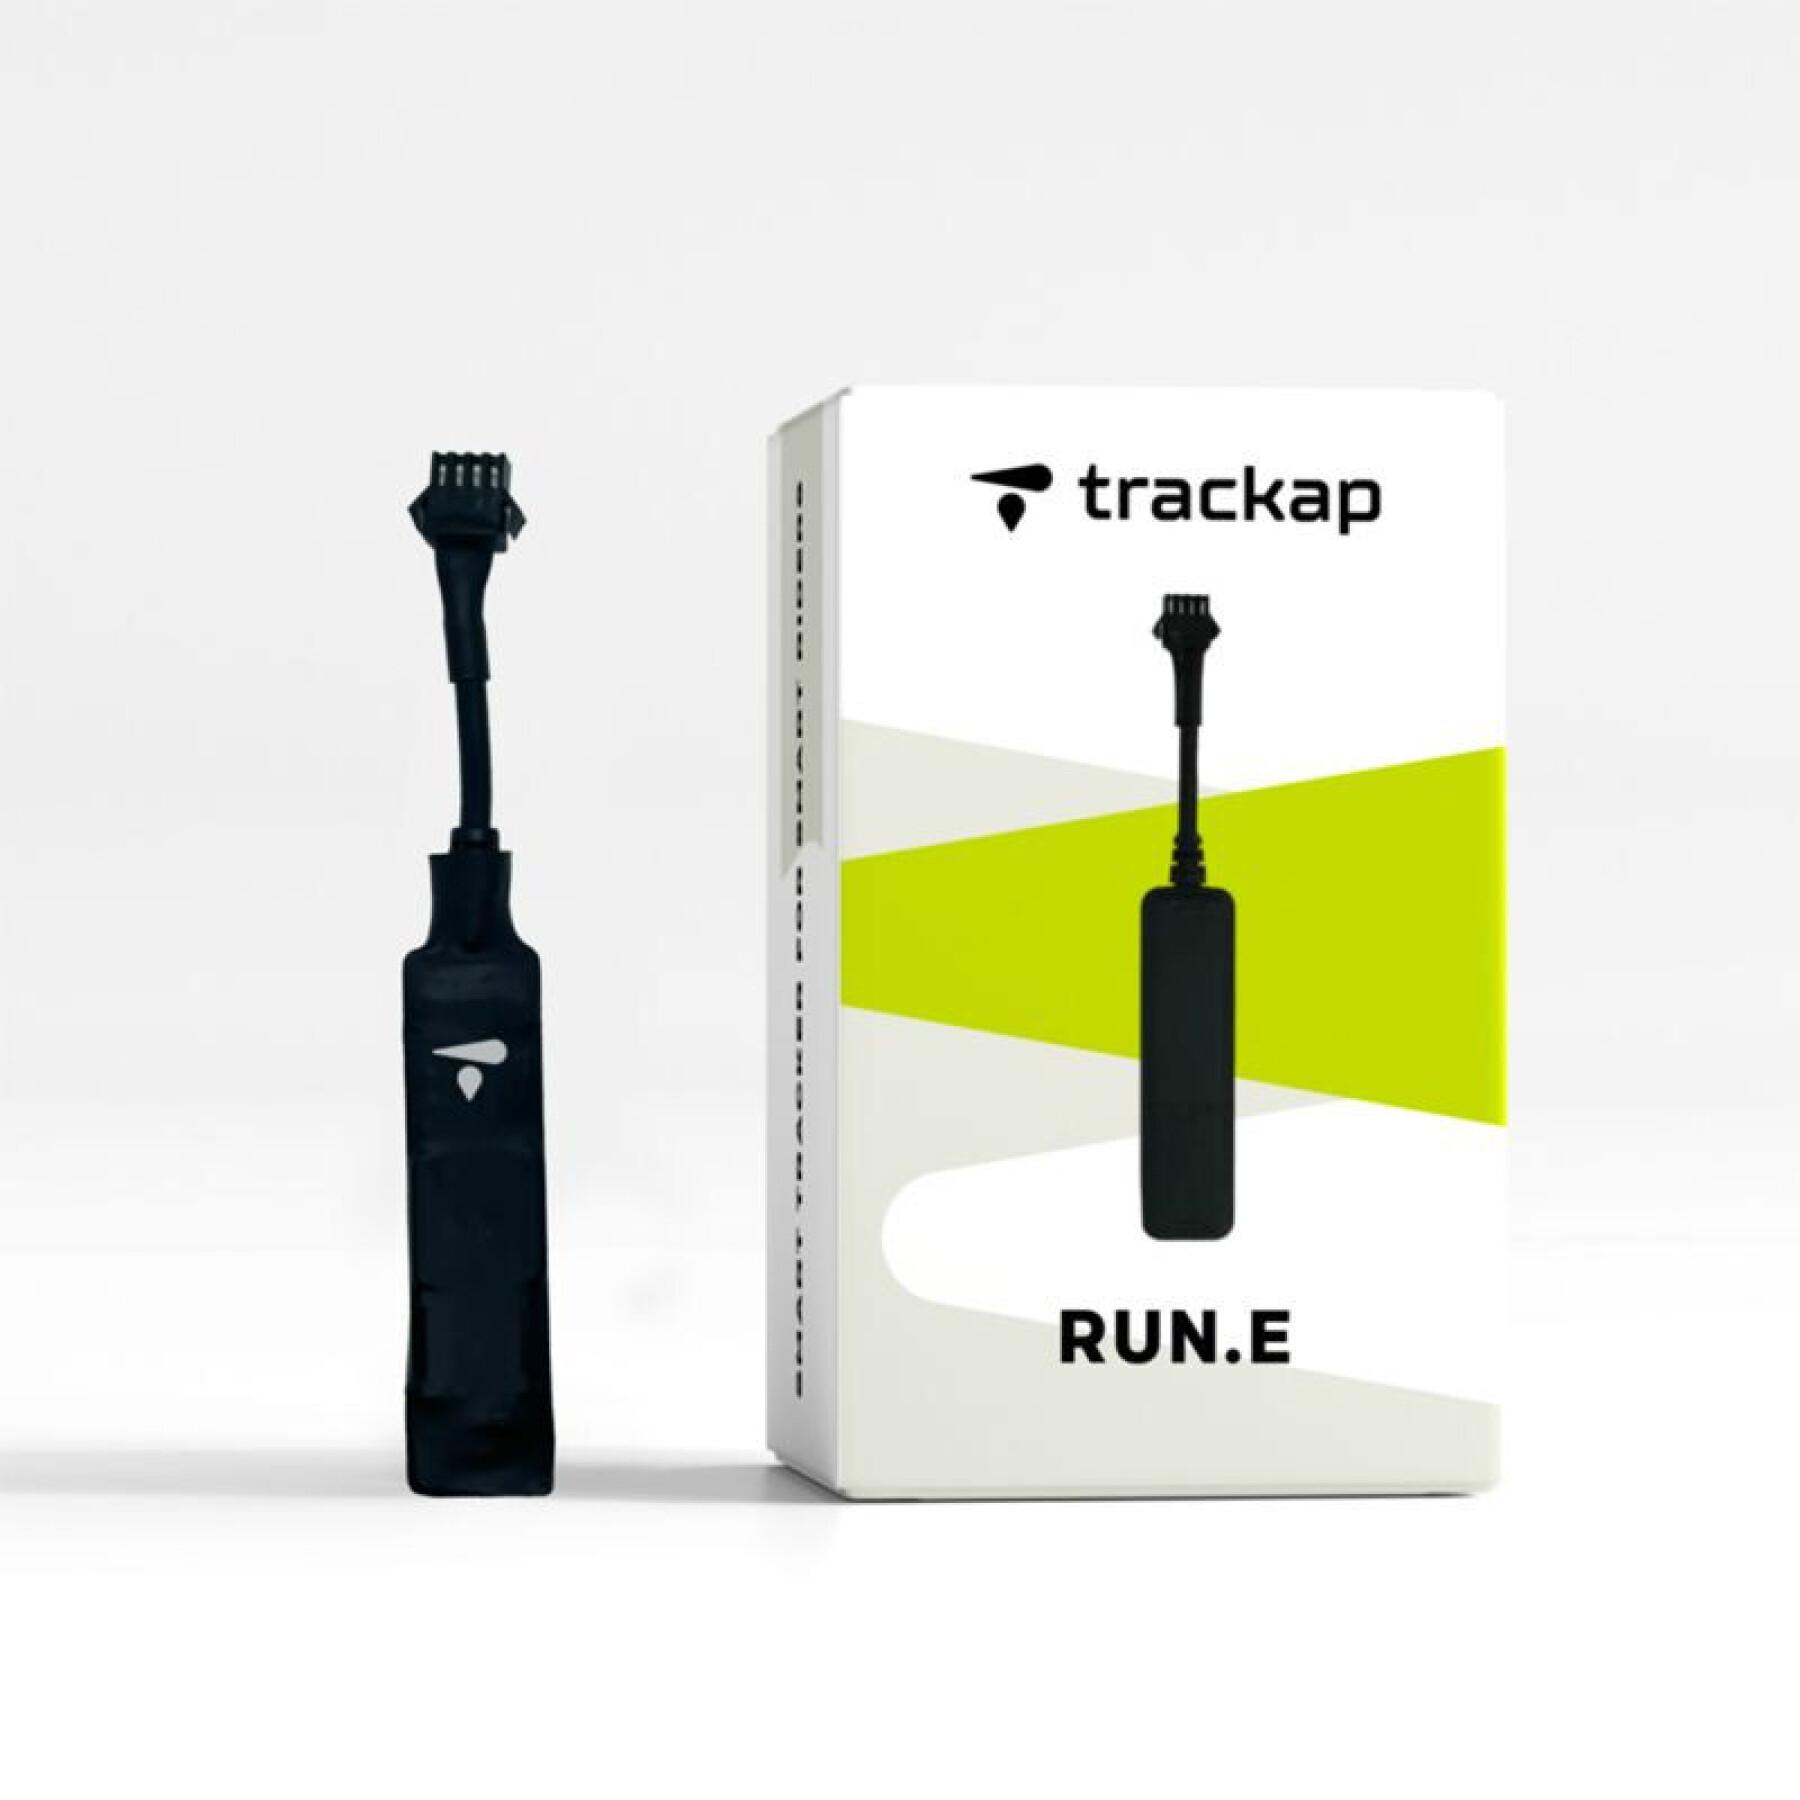 Tracker gps urządzenie zabezpieczające z roczną subskrypcją Trackap Run E Bafang